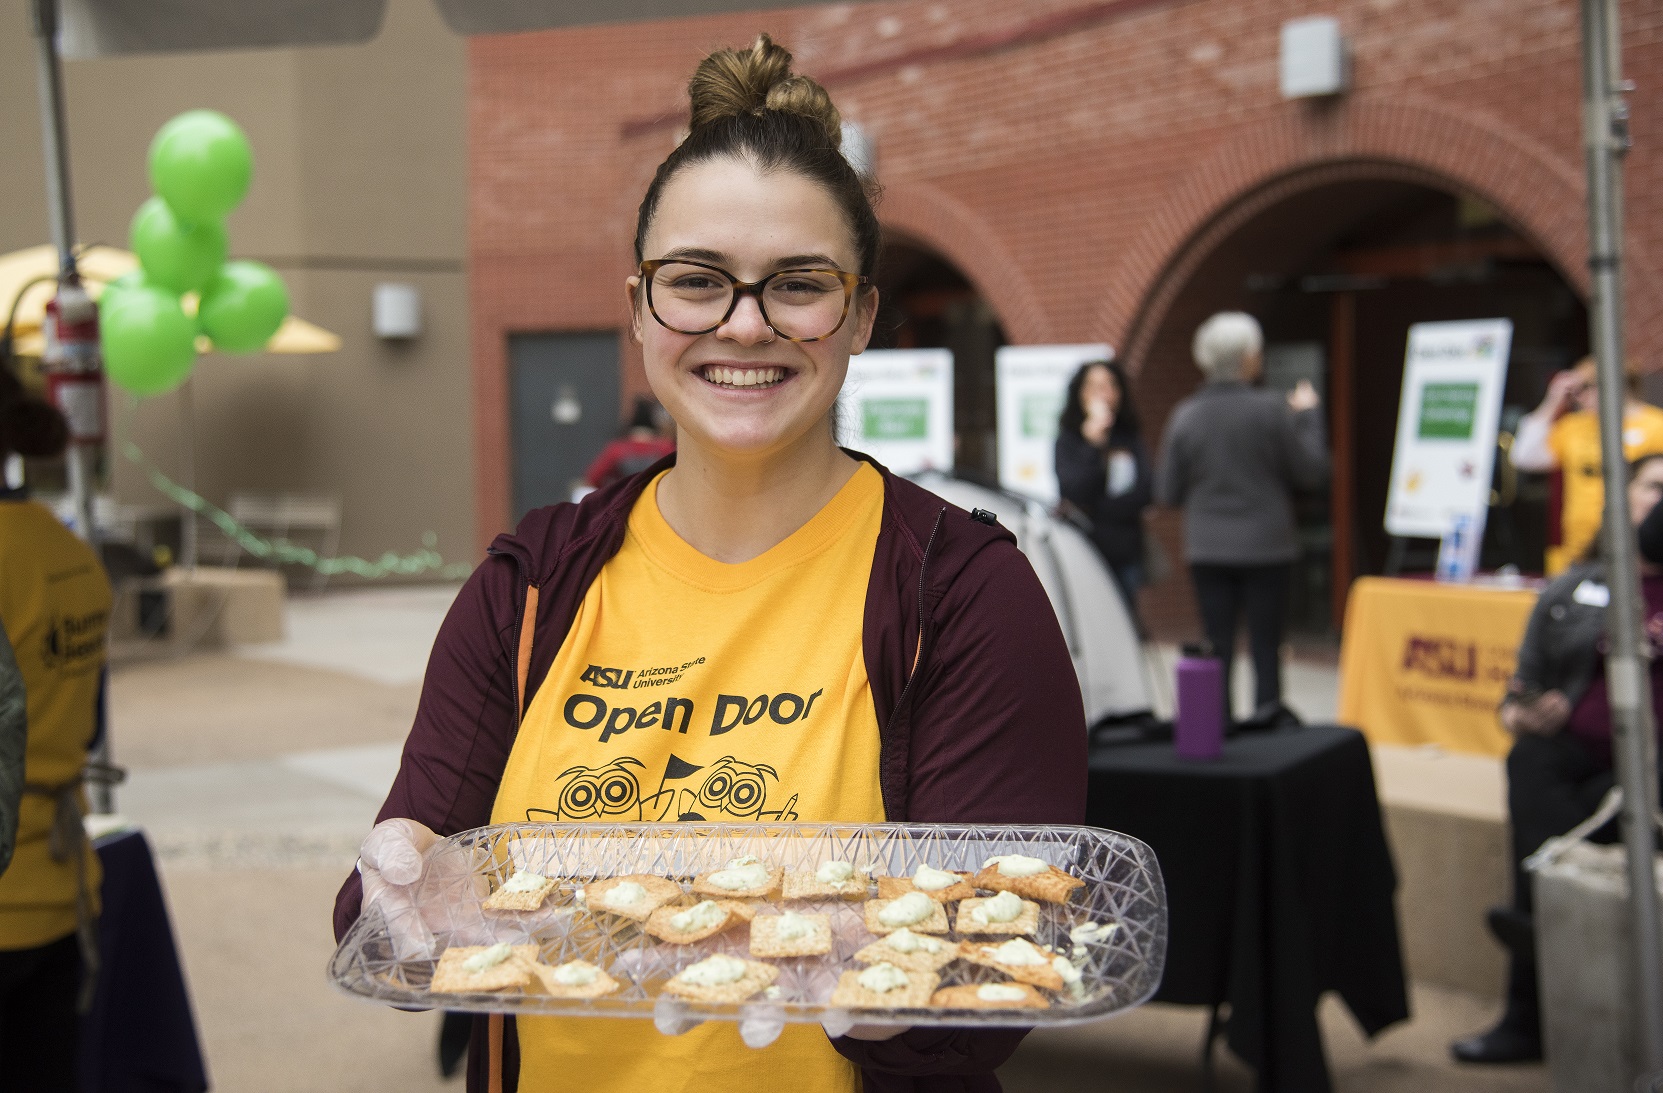 A Health Solutions volunteer offers nutritious treats during ASU's Open Door event.